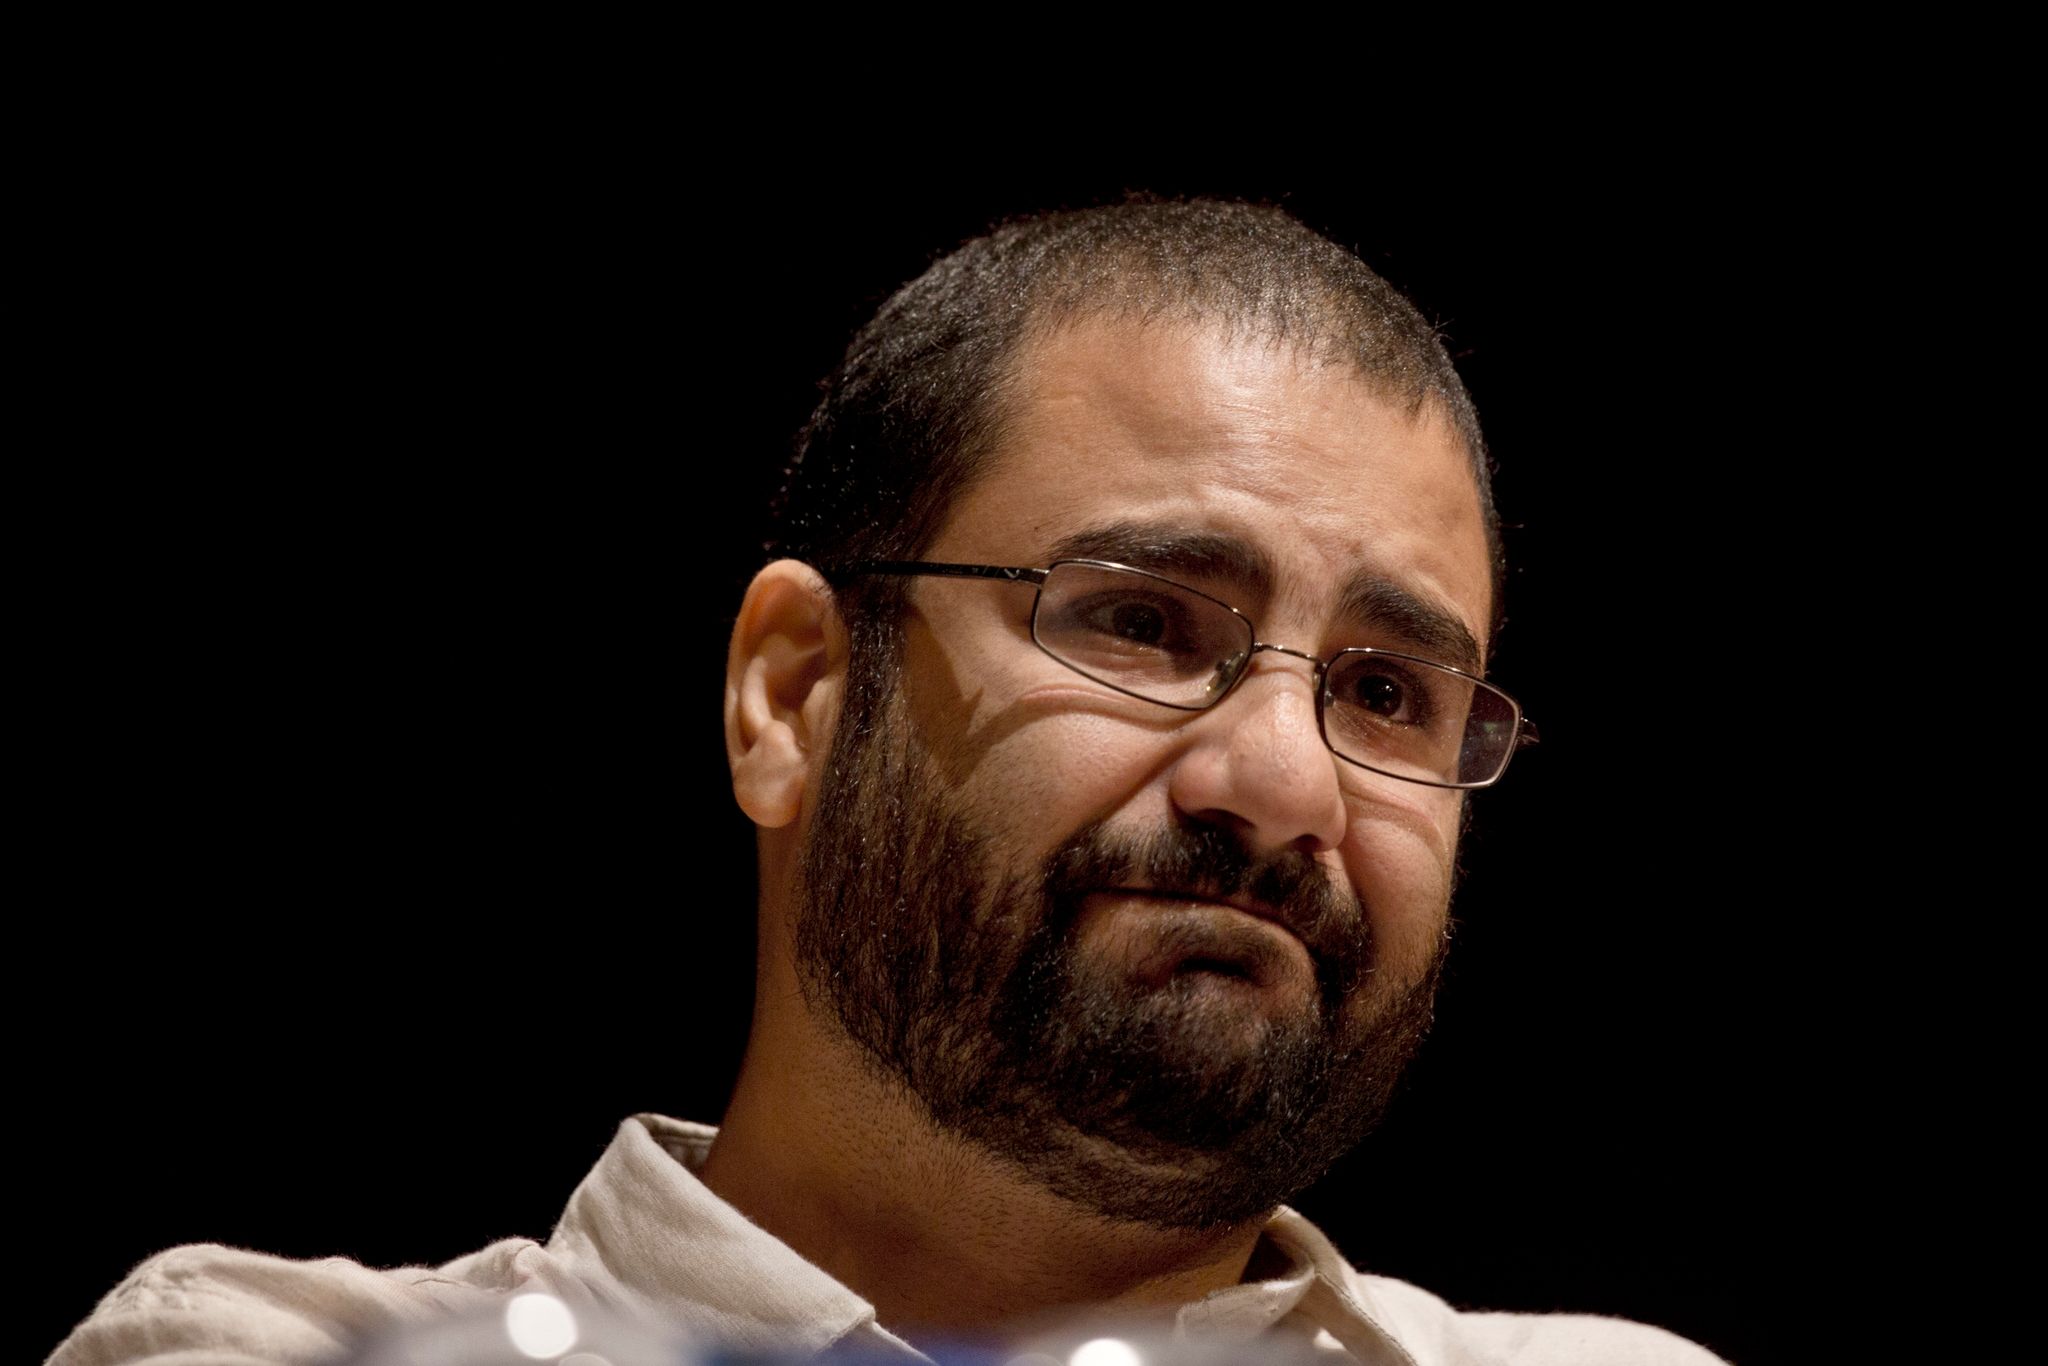 Ägyptens führender pro-demokratischer Aktivist Alaa Abdel-Fattah während einer Konferenz an der American University im März 2019.